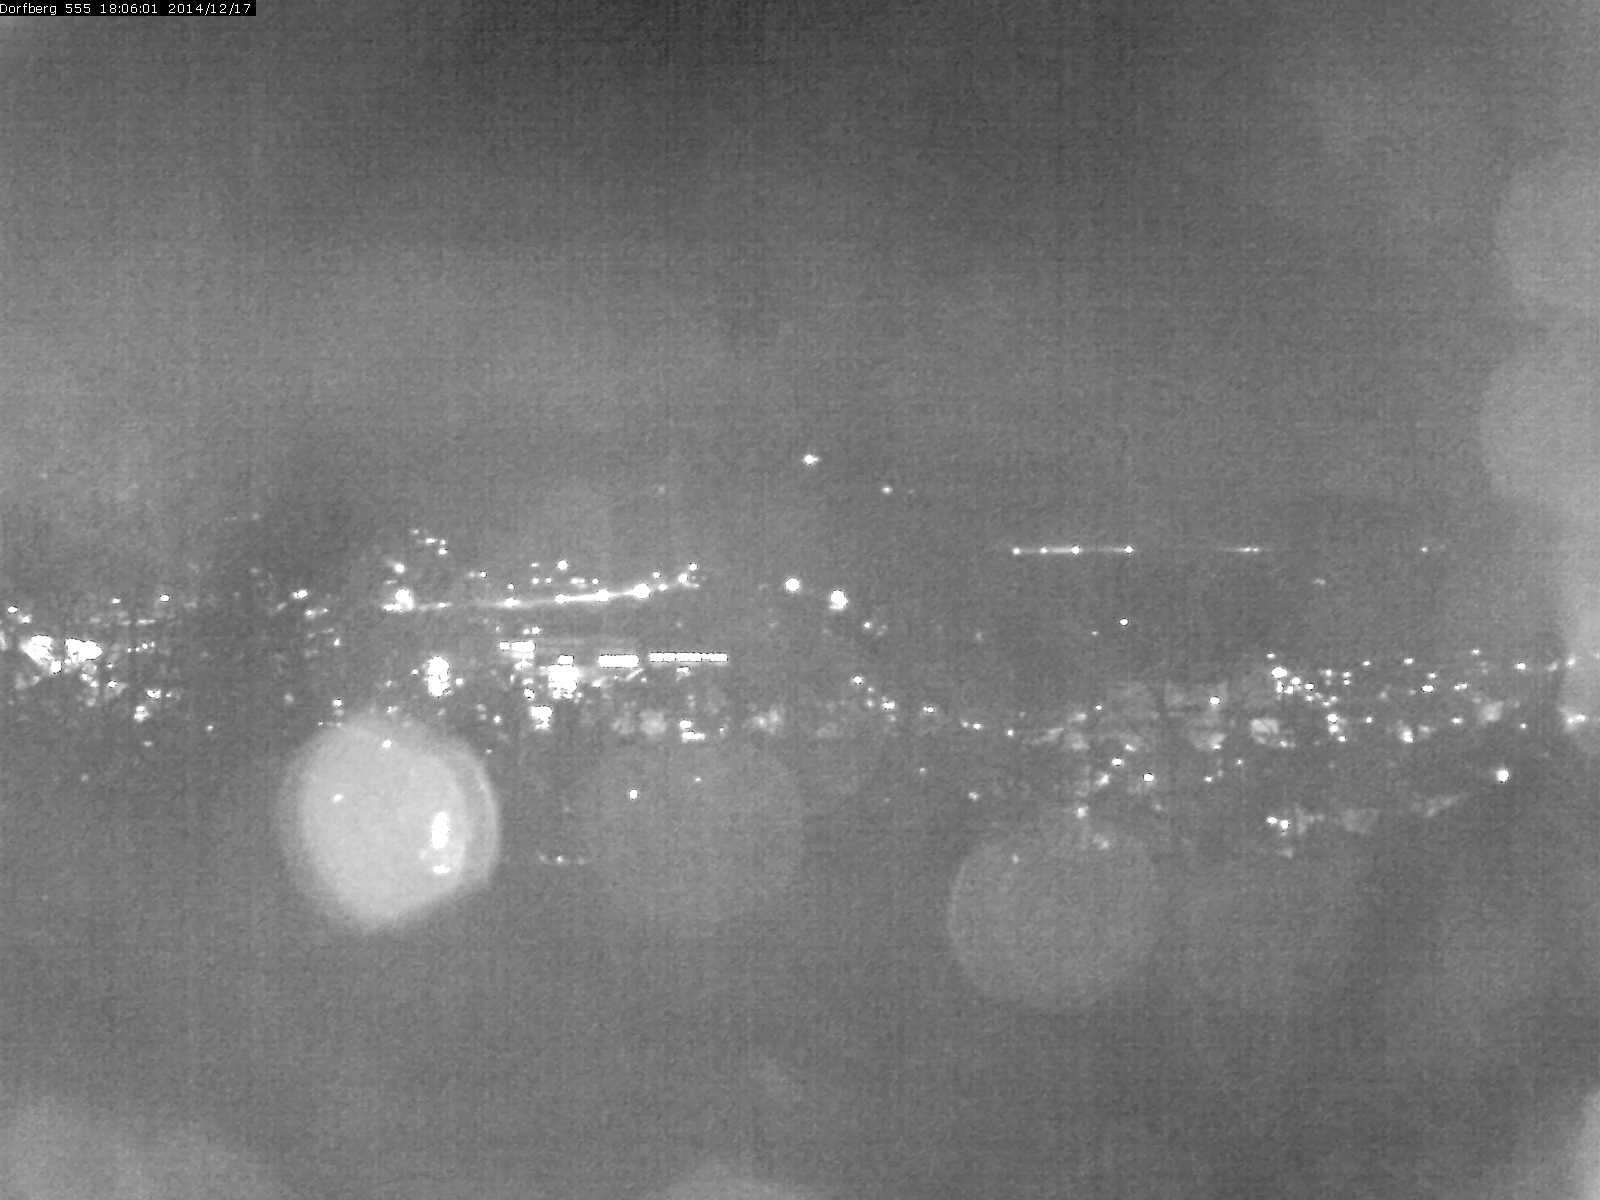 Webcam-Bild: Aussicht vom Dorfberg in Langnau 20141217-180601